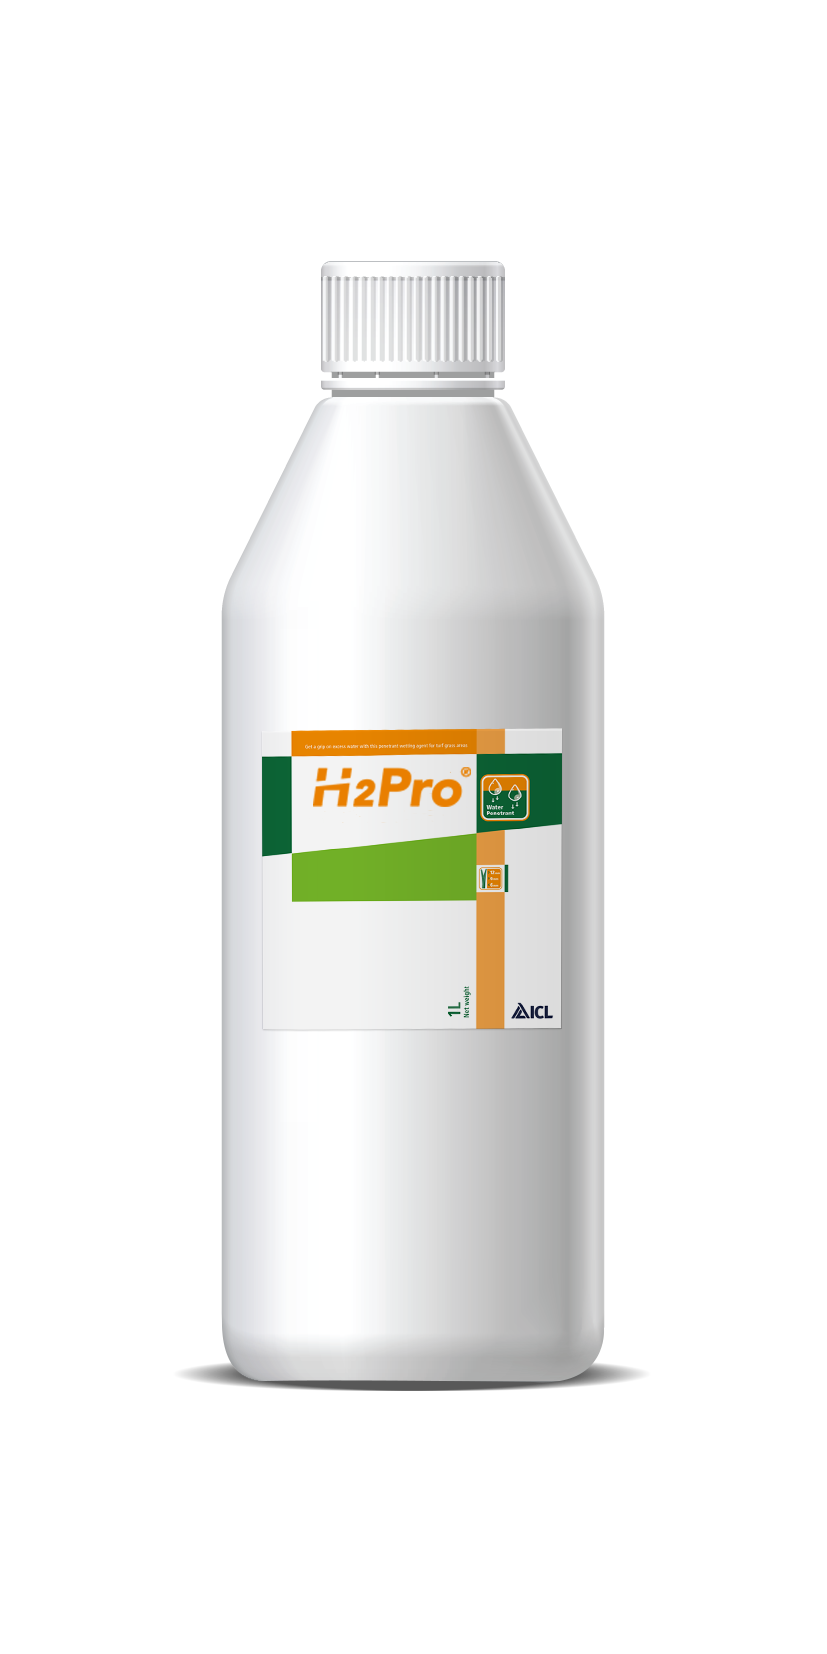 Order H2Pro TriSmart